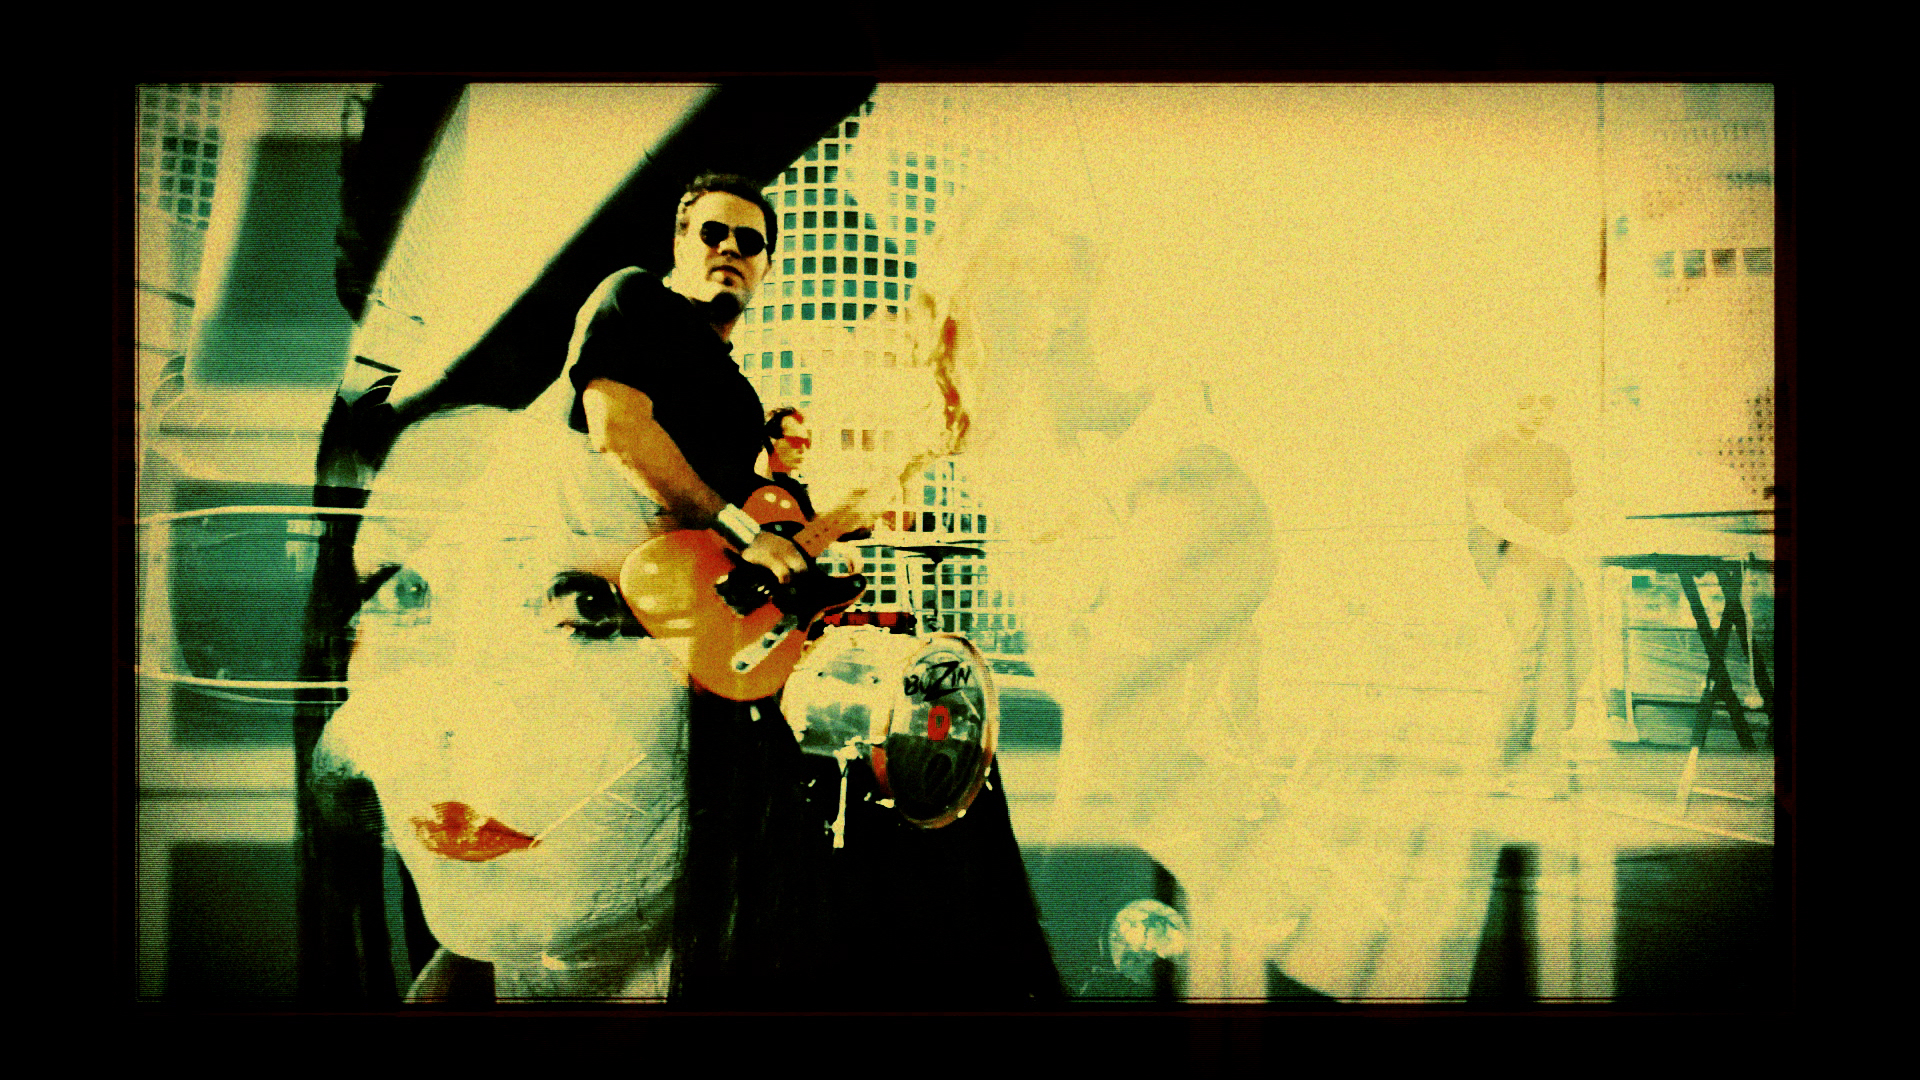 Still from music video 